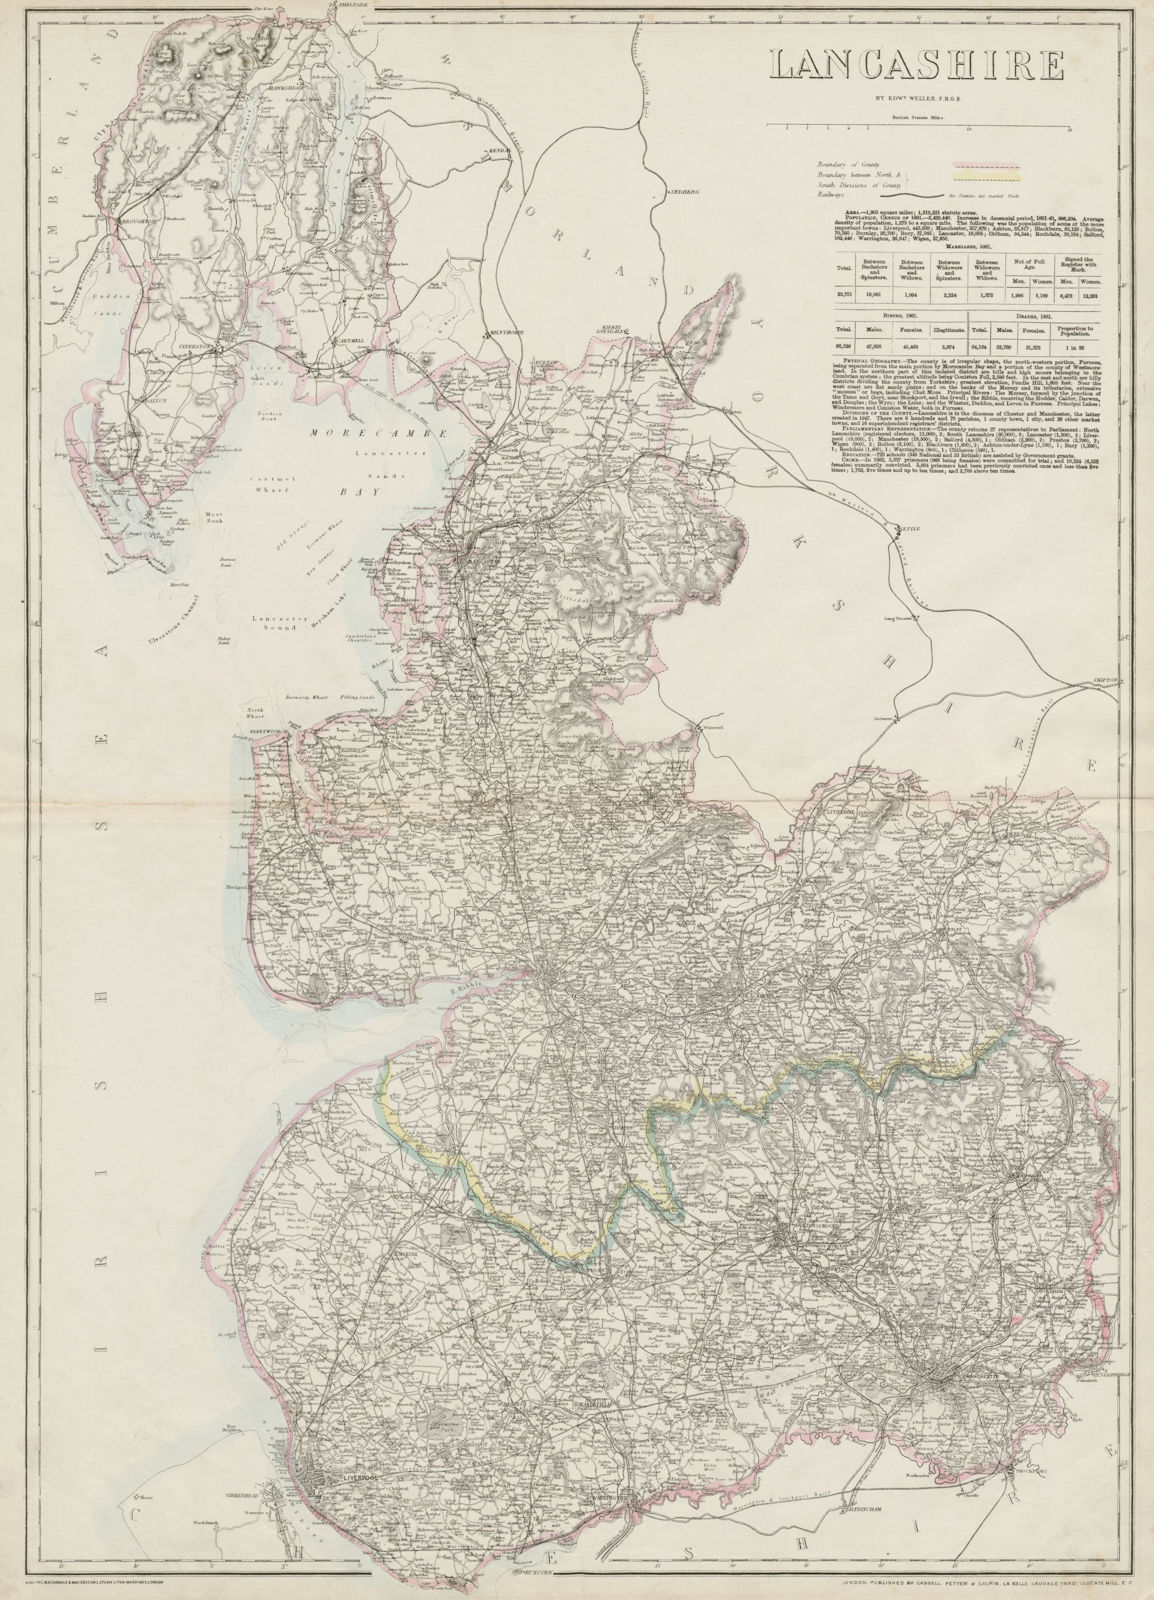 LANCASHIRE large antique county map. Railways. Dispatch atlas. WELLER 1863